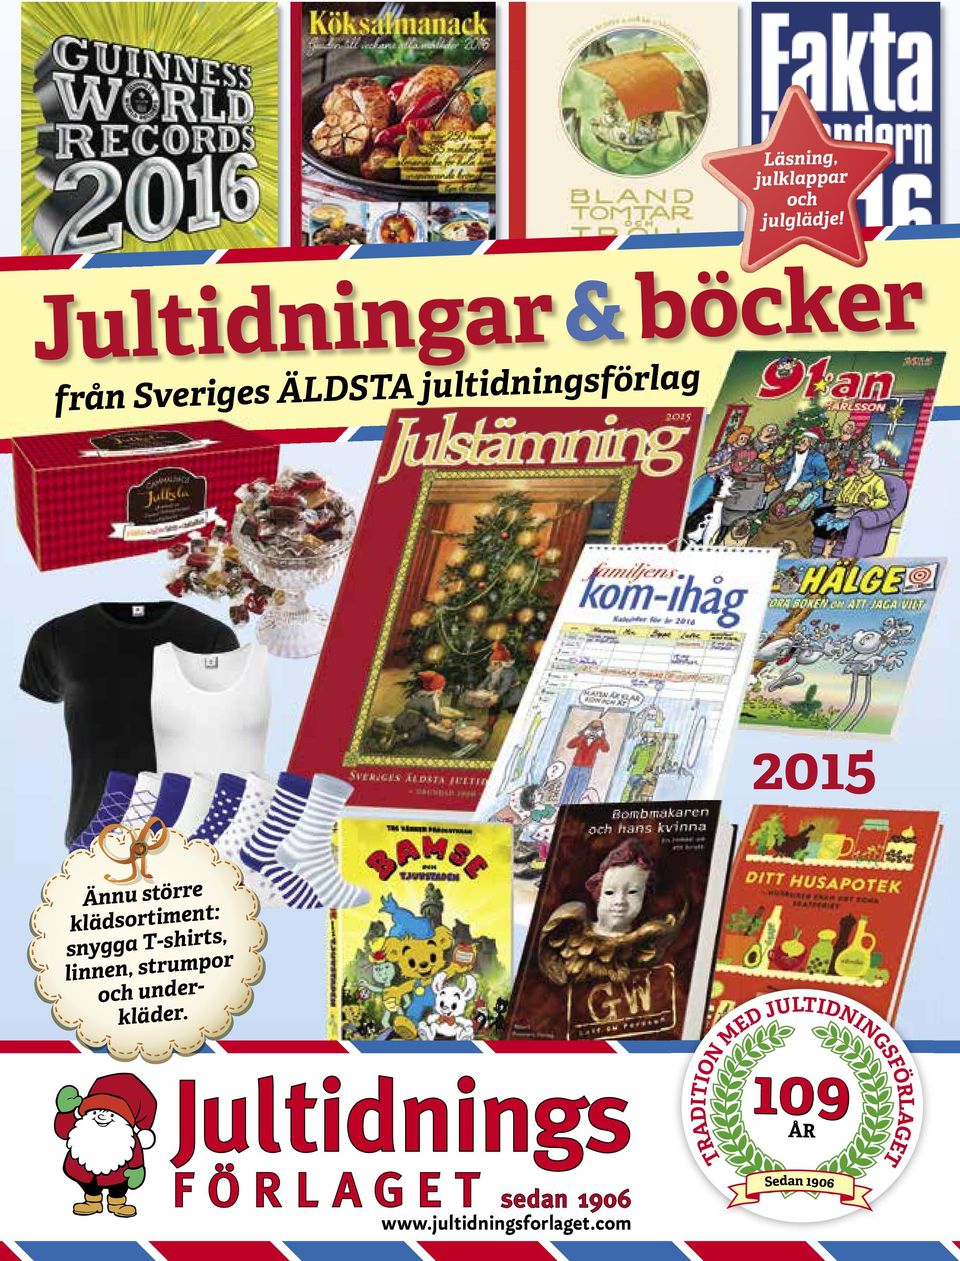 Jultidningar & böcker från Sveriges ÄLDSTA jultidningsförlag